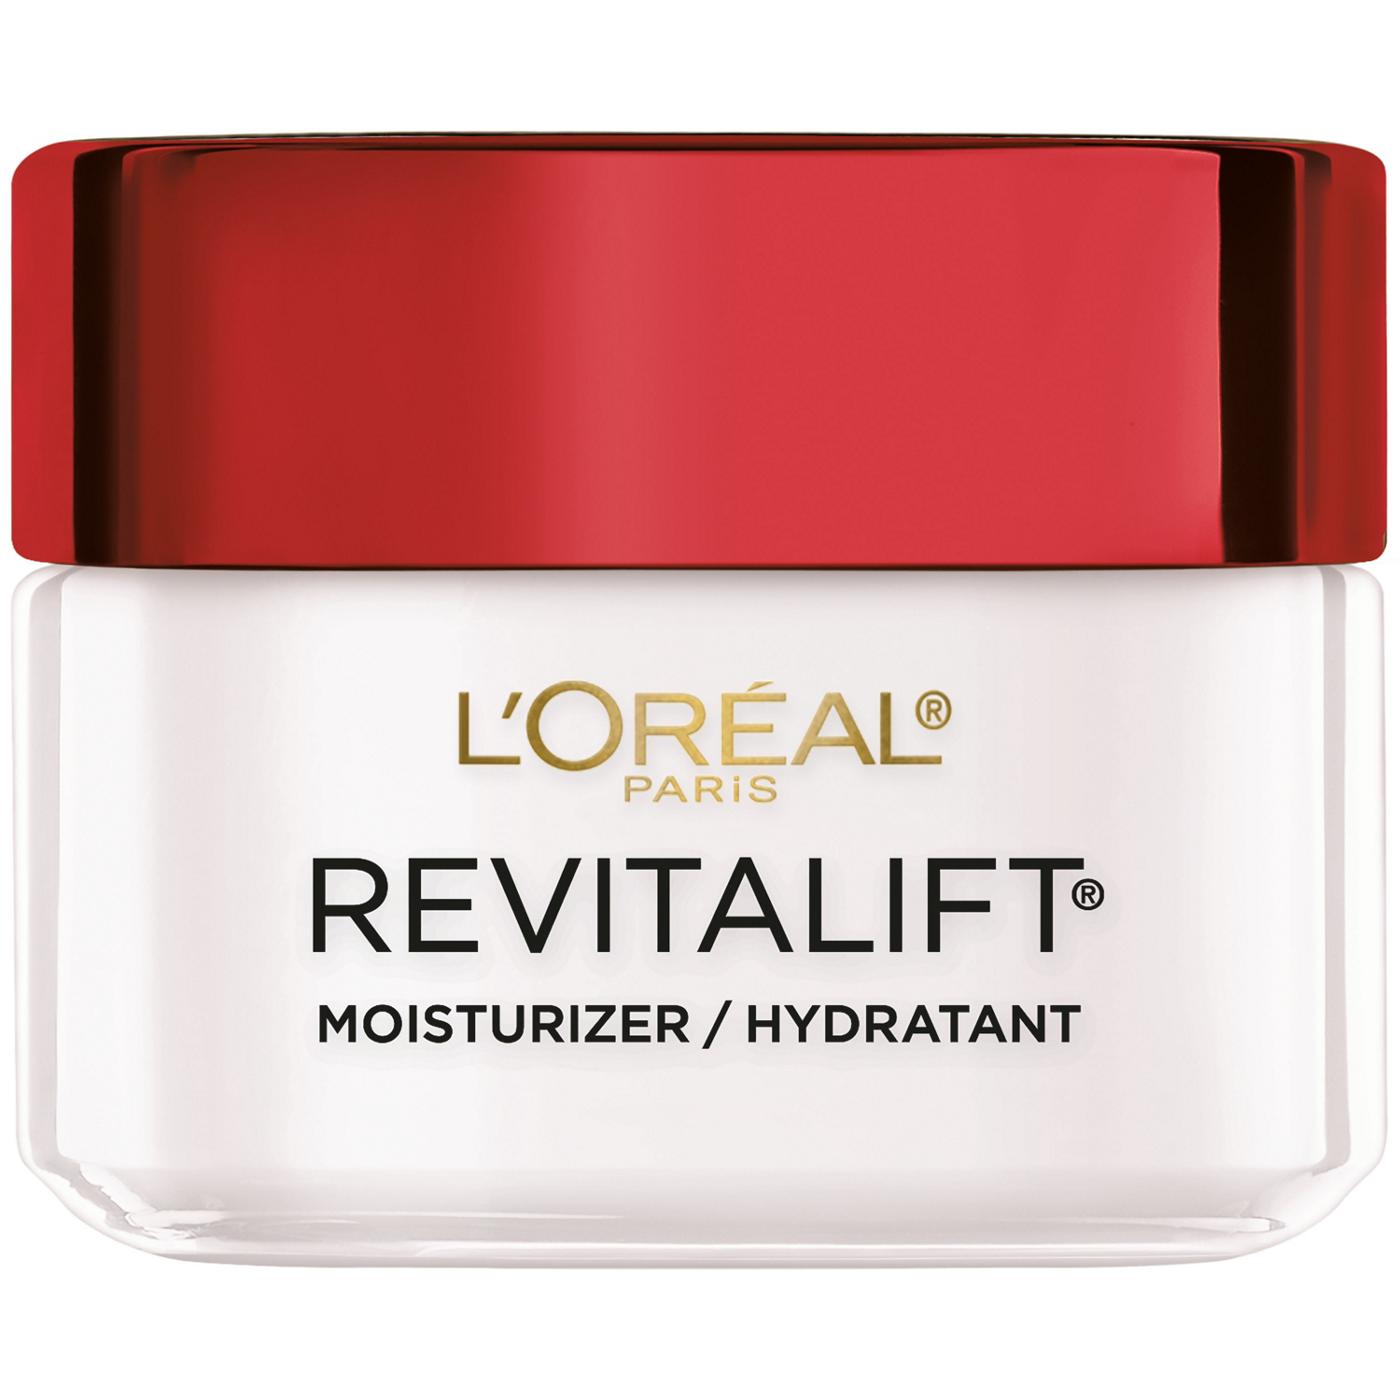 L'Oréal Paris Revitalift Anti-Wrinkle Plus Firming Day Face Moisturizer; image 5 of 6